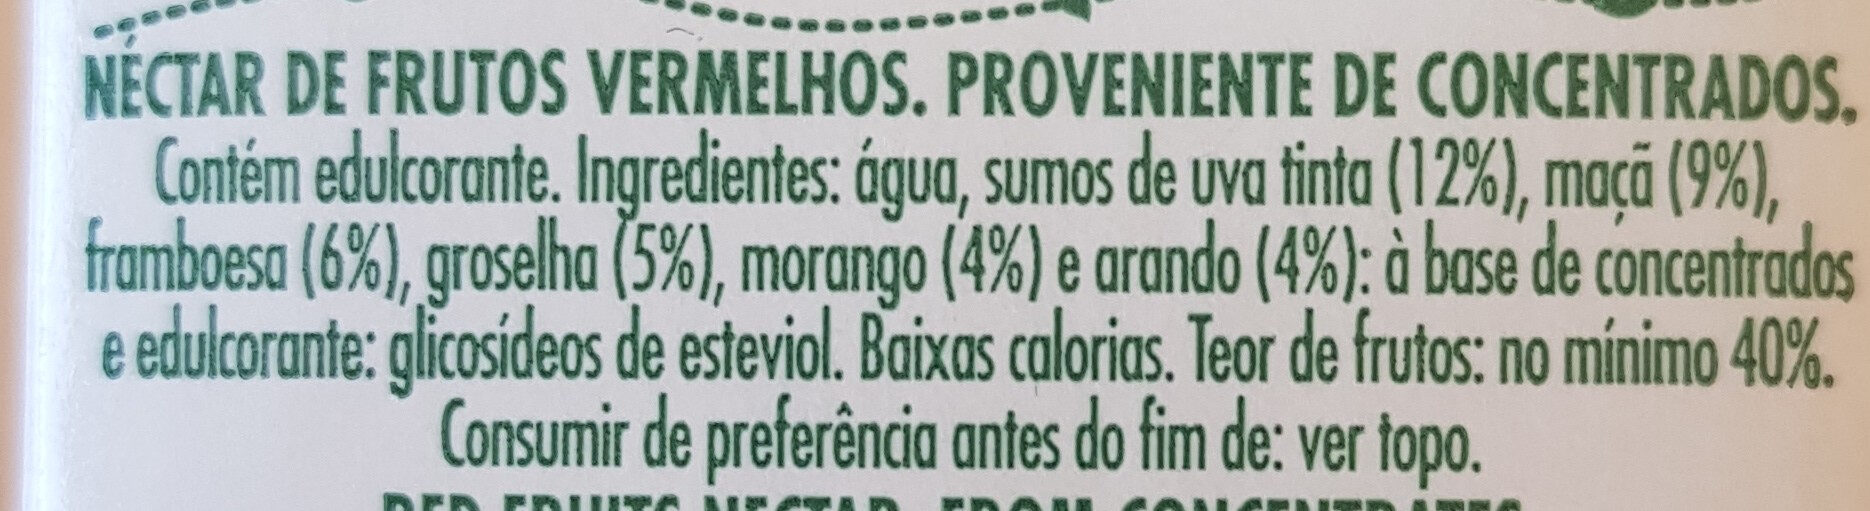 Vital Frutos Vermelhos - Ingredientes